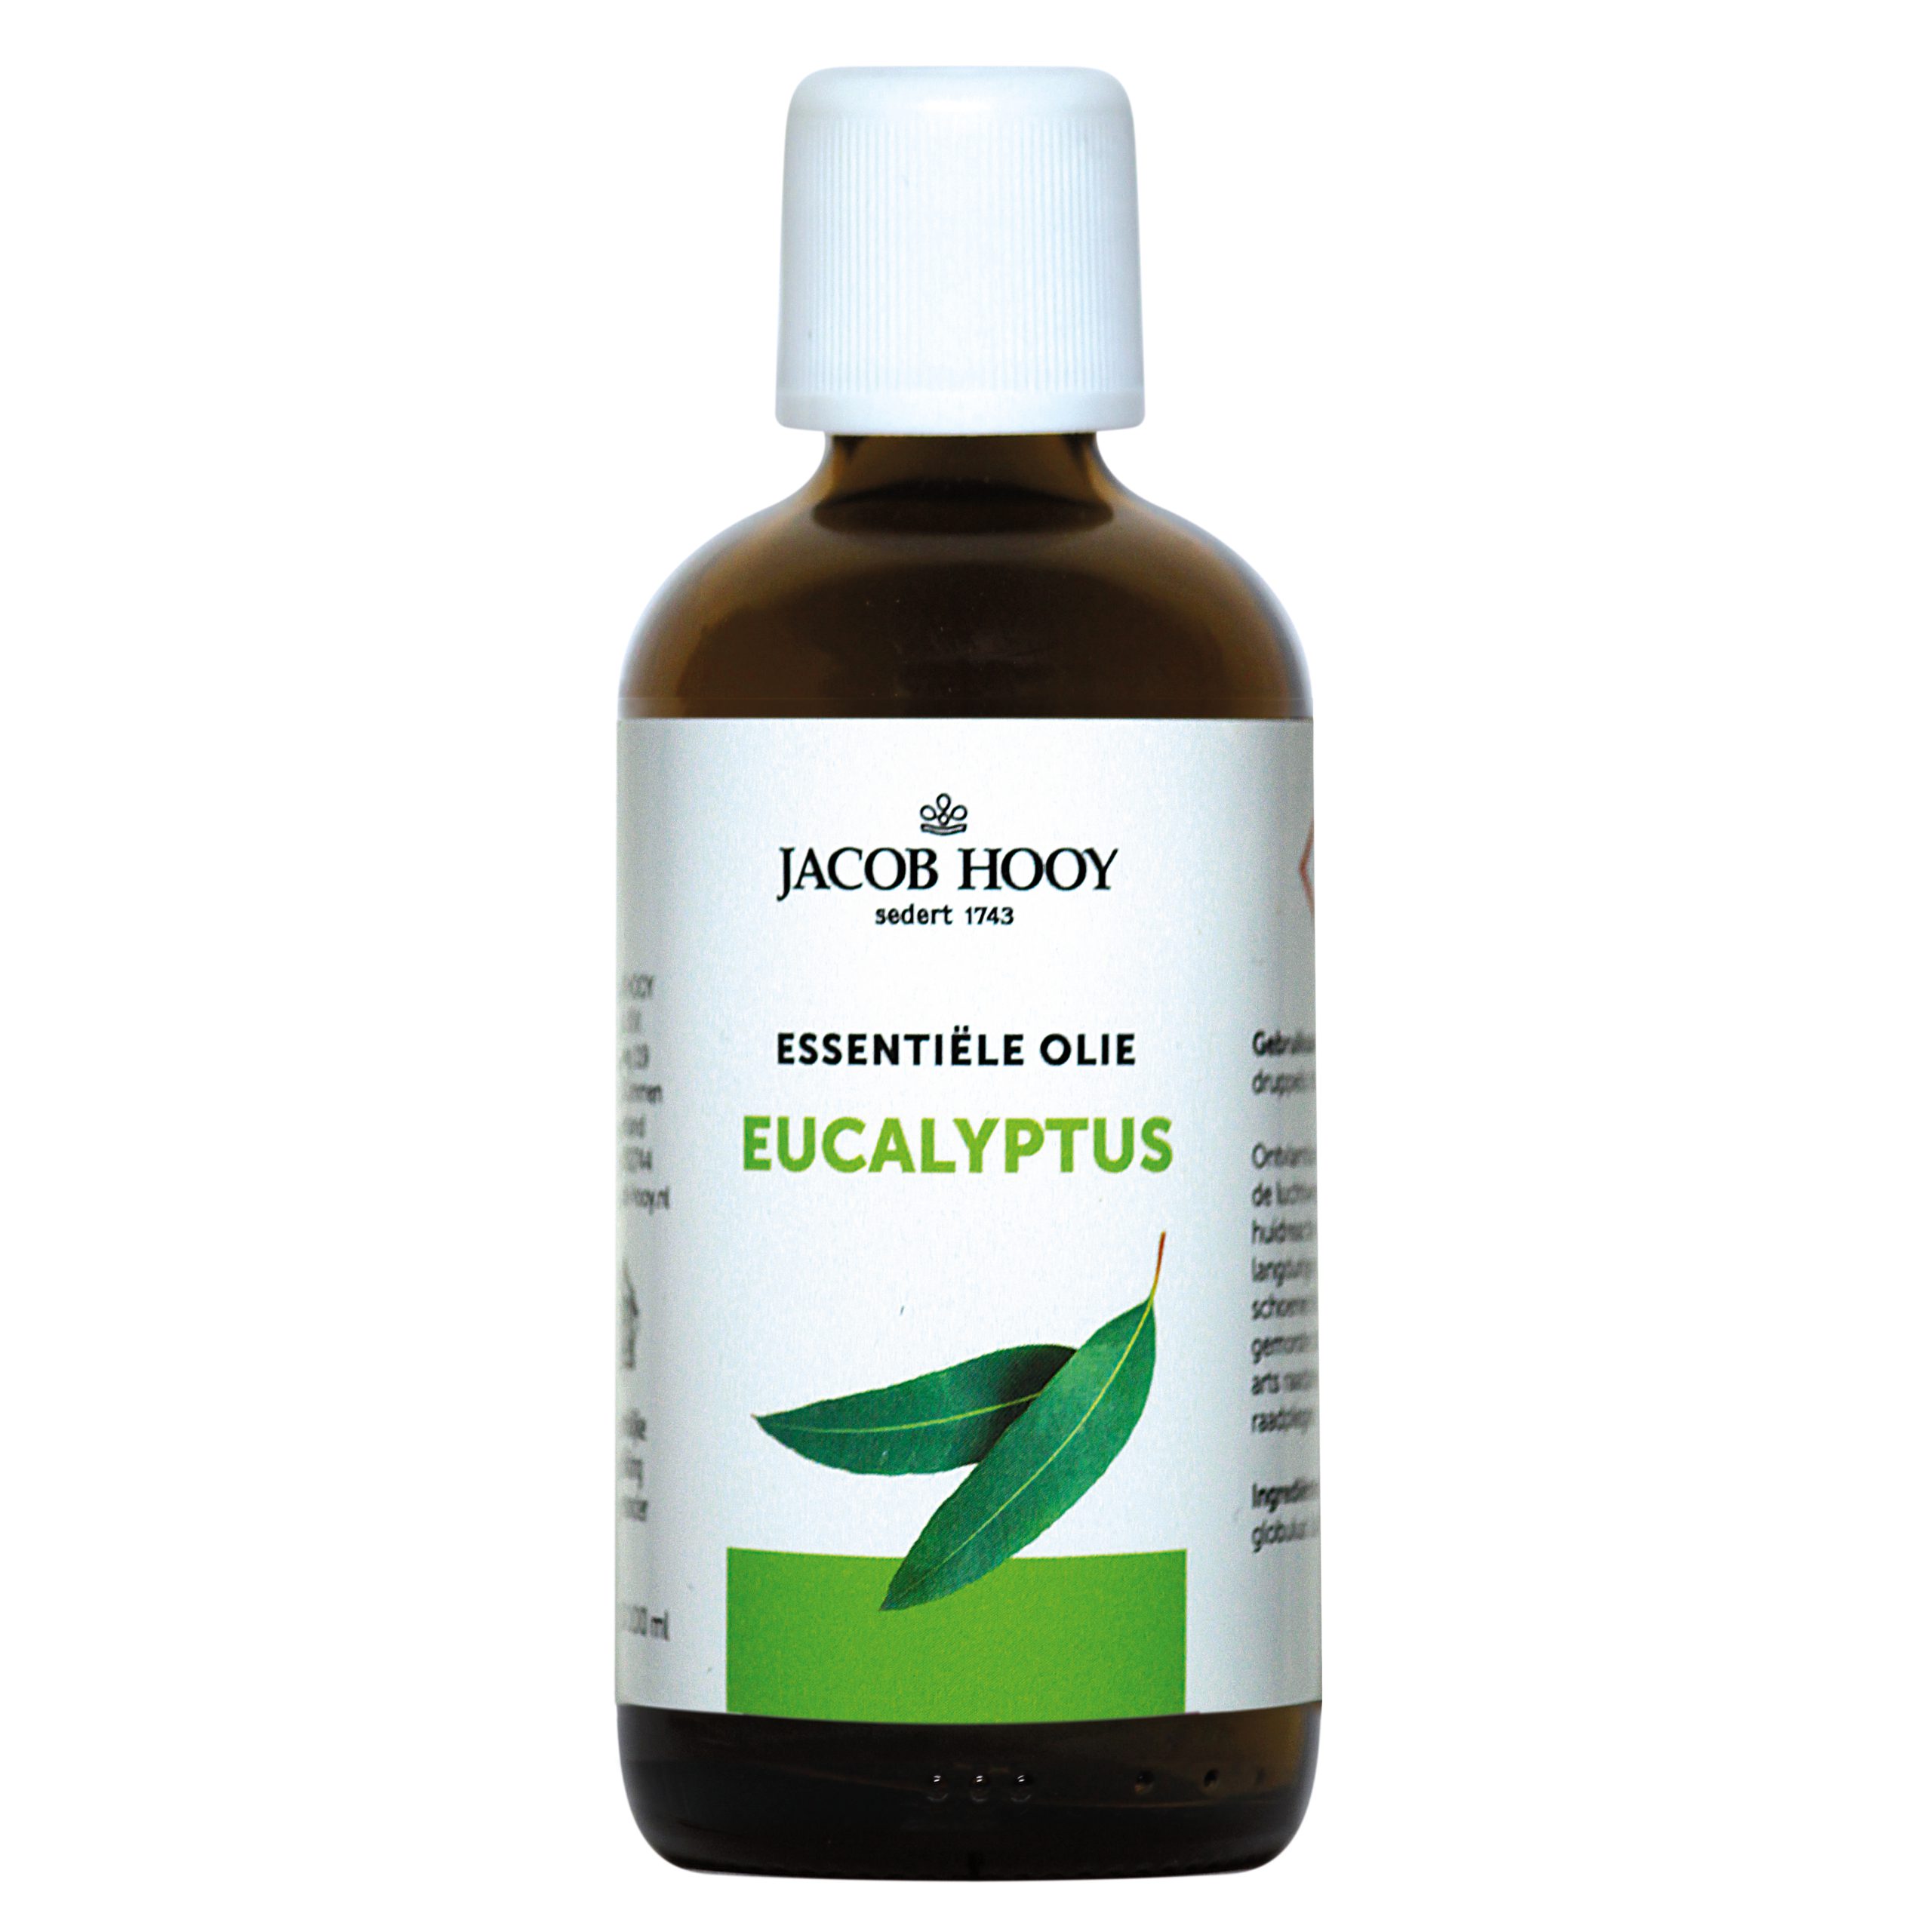 Essentiële olie Eucalyptus 100ml